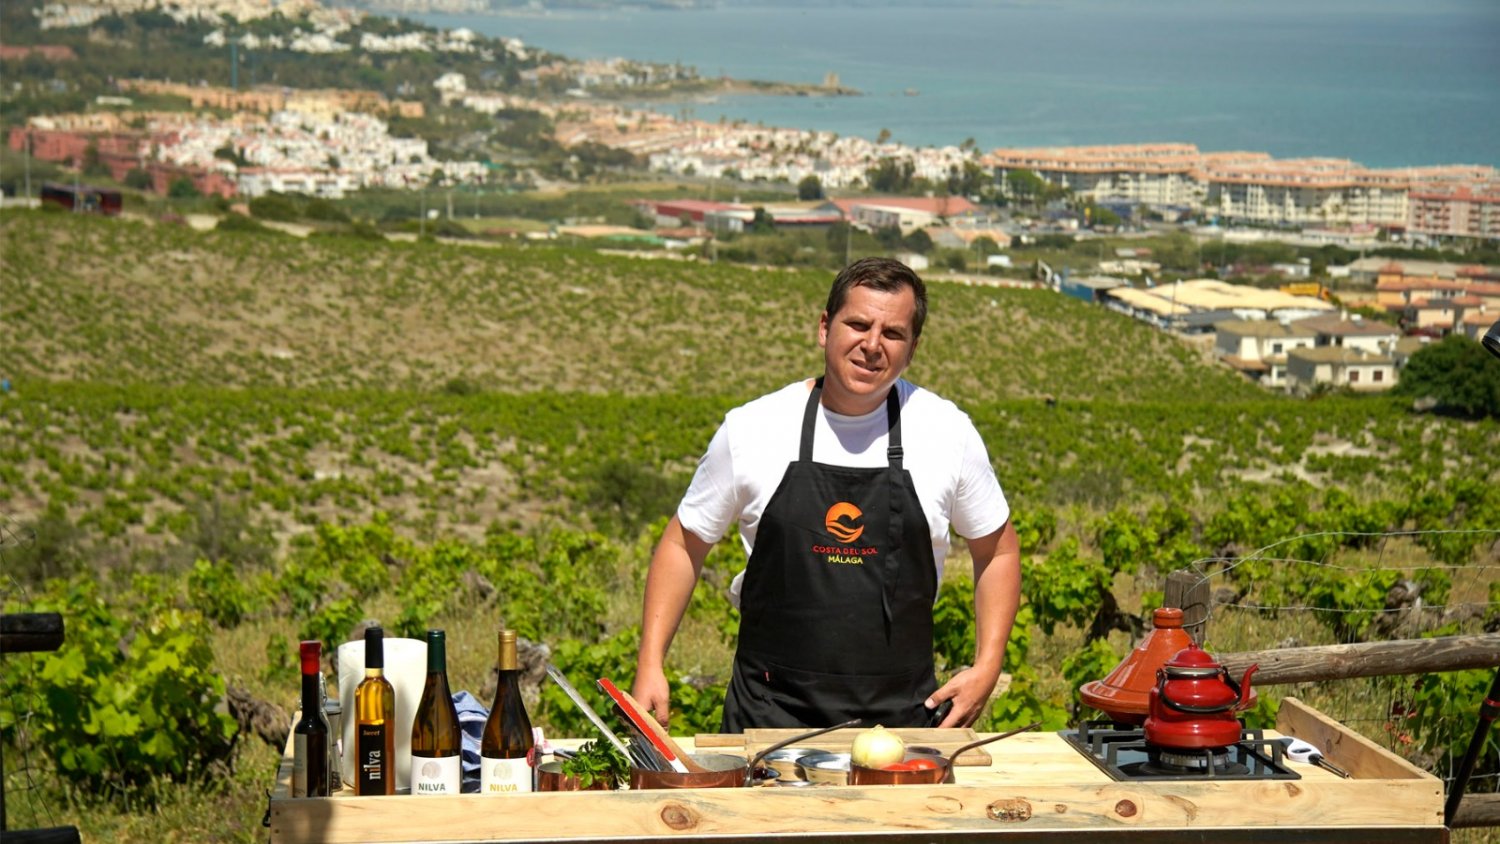 El cocinero Miguel Herrera, presentador de la campaña 'Imagínate' del Patronato de Turismo de la Costa del Sol